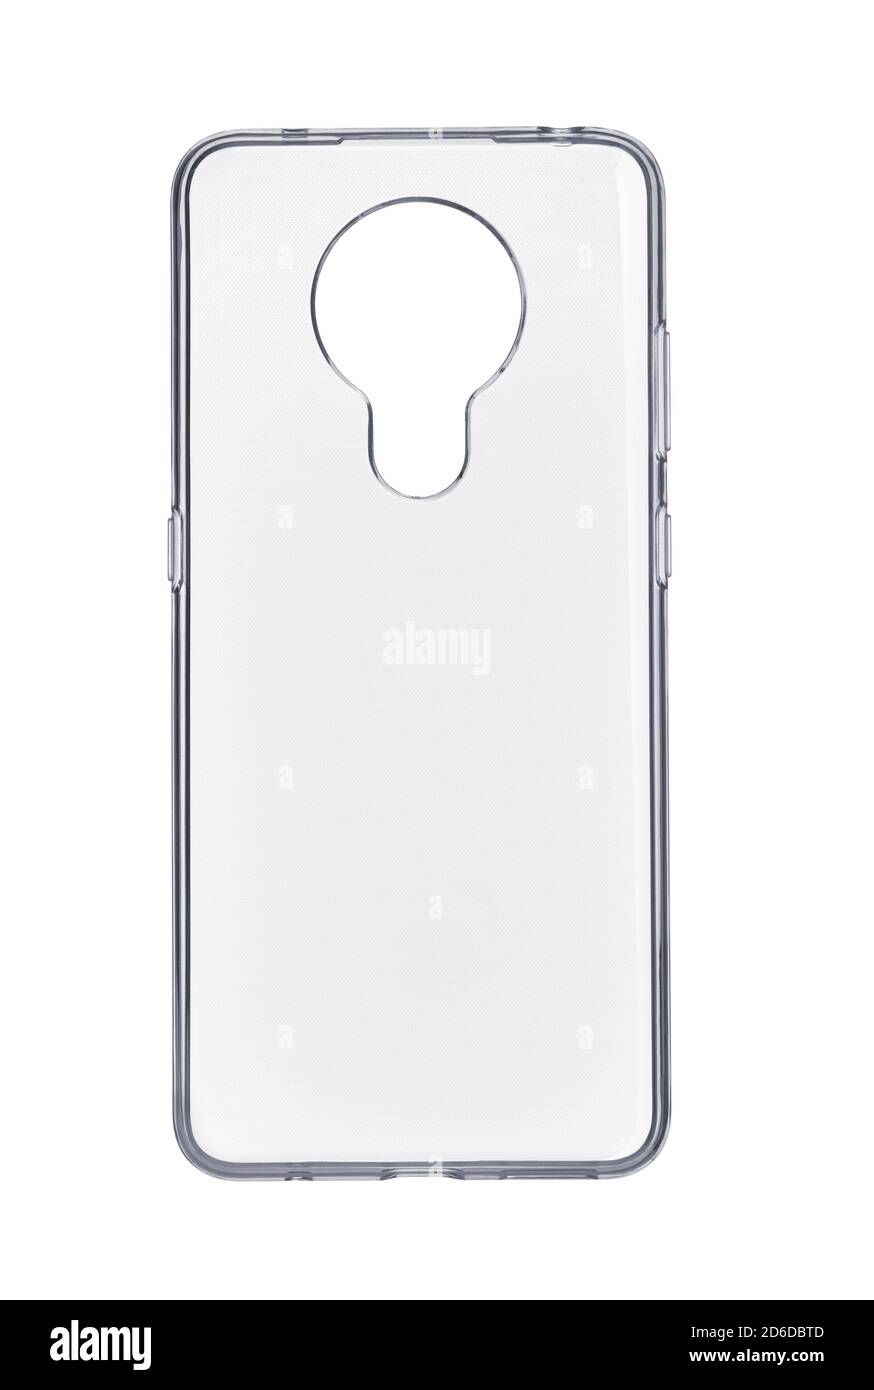 Vista frontale del paraurti vuoto in silicone trasparente isolato della custodia dello smartphone su bianco Foto Stock